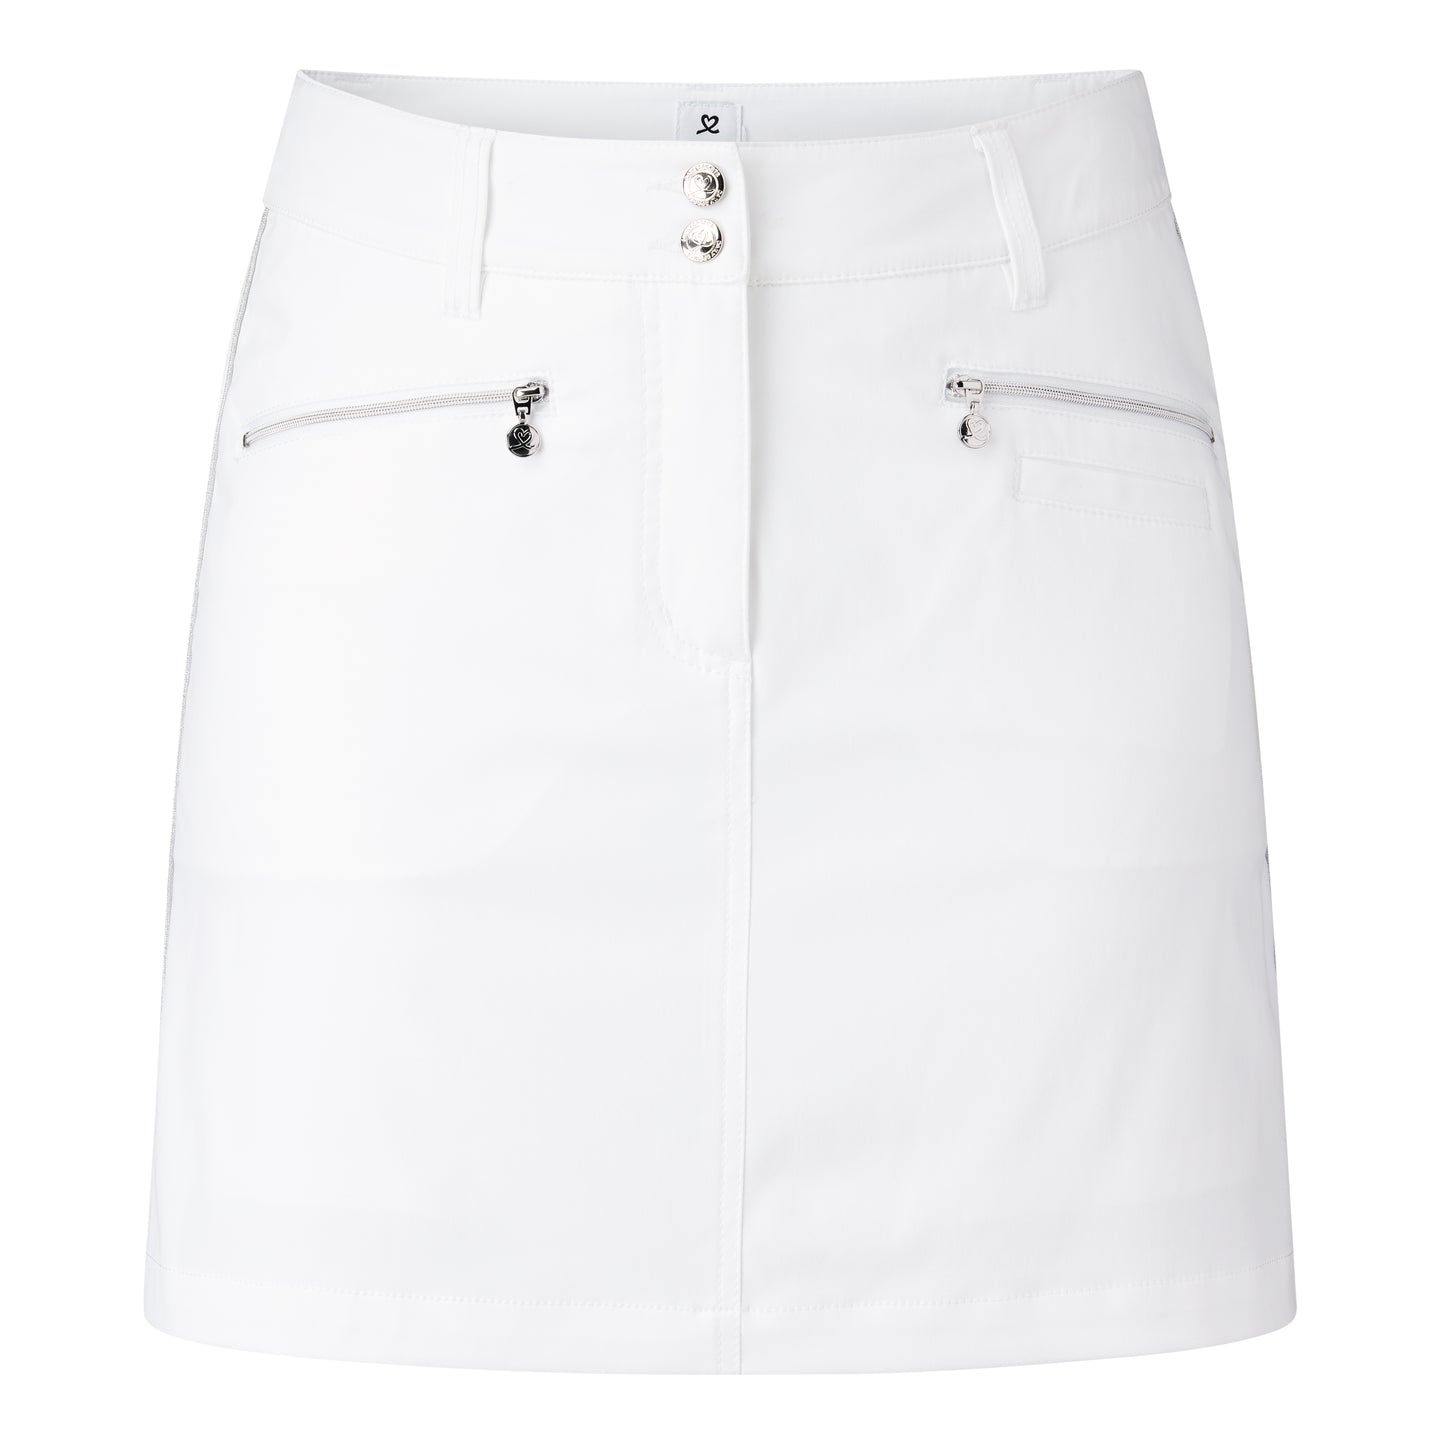 Glam skirt pants 45 cm